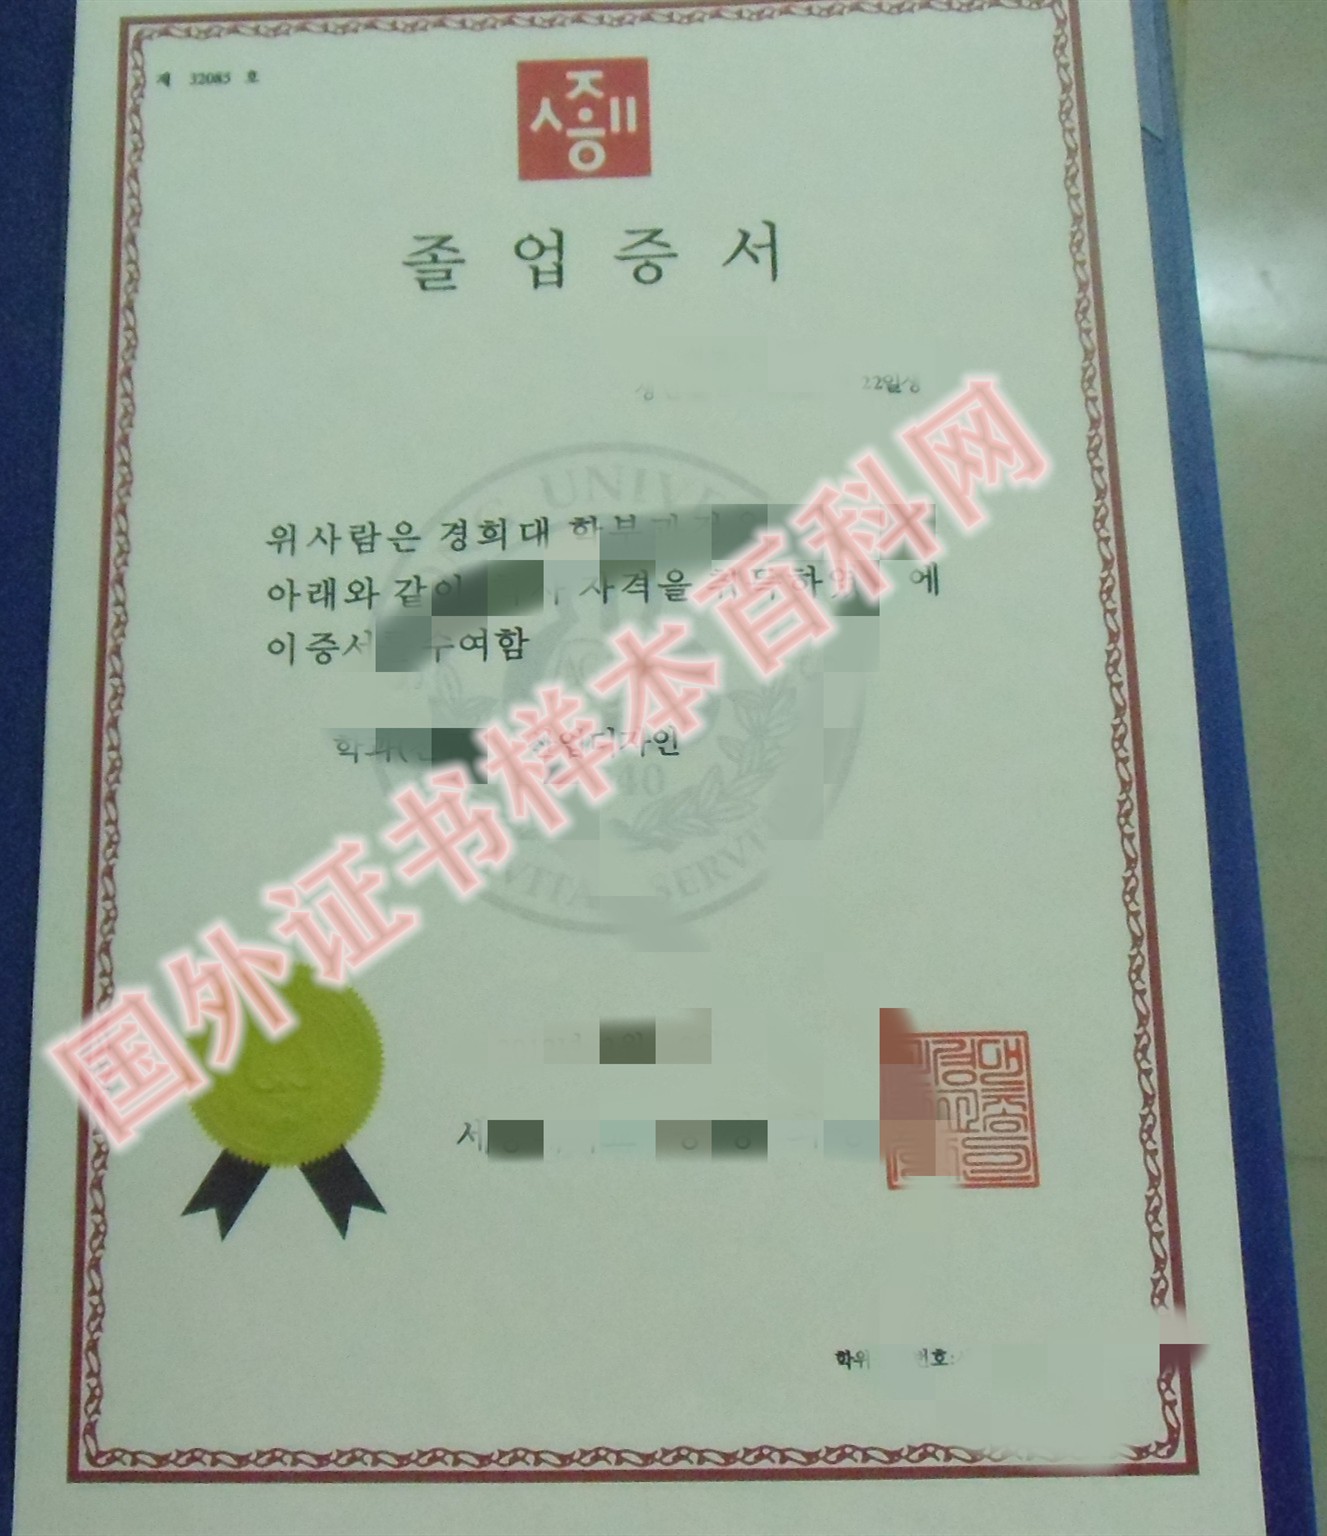 原版韩国世宗大学毕业证书样本